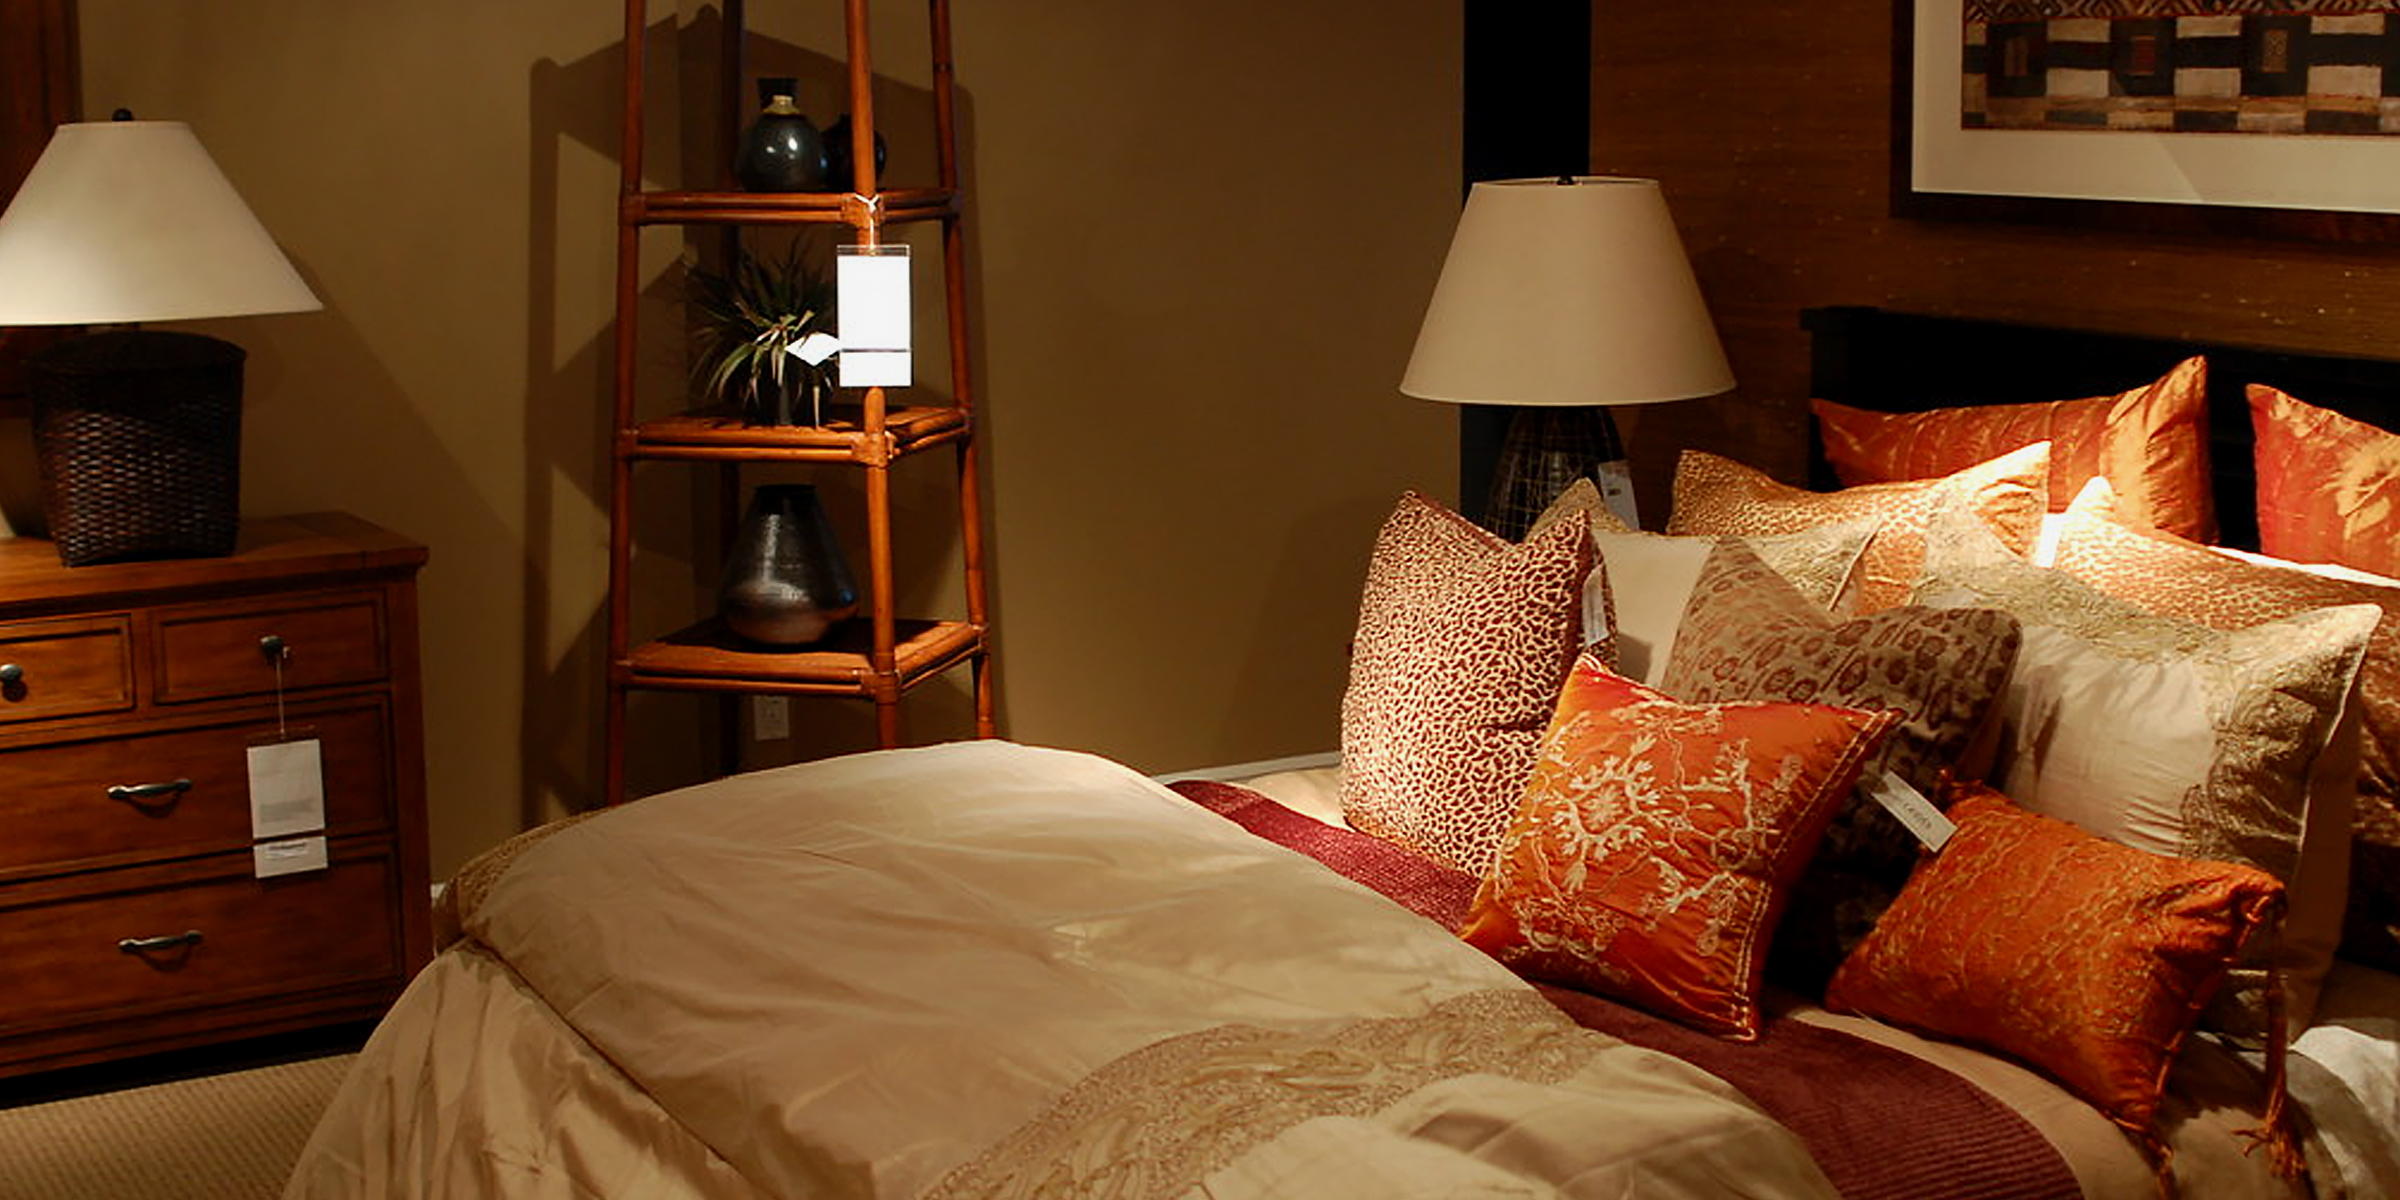 Une belle chambre à coucher | Source : Flickr.com/gfhdickinson/CC BY-SA 2.0